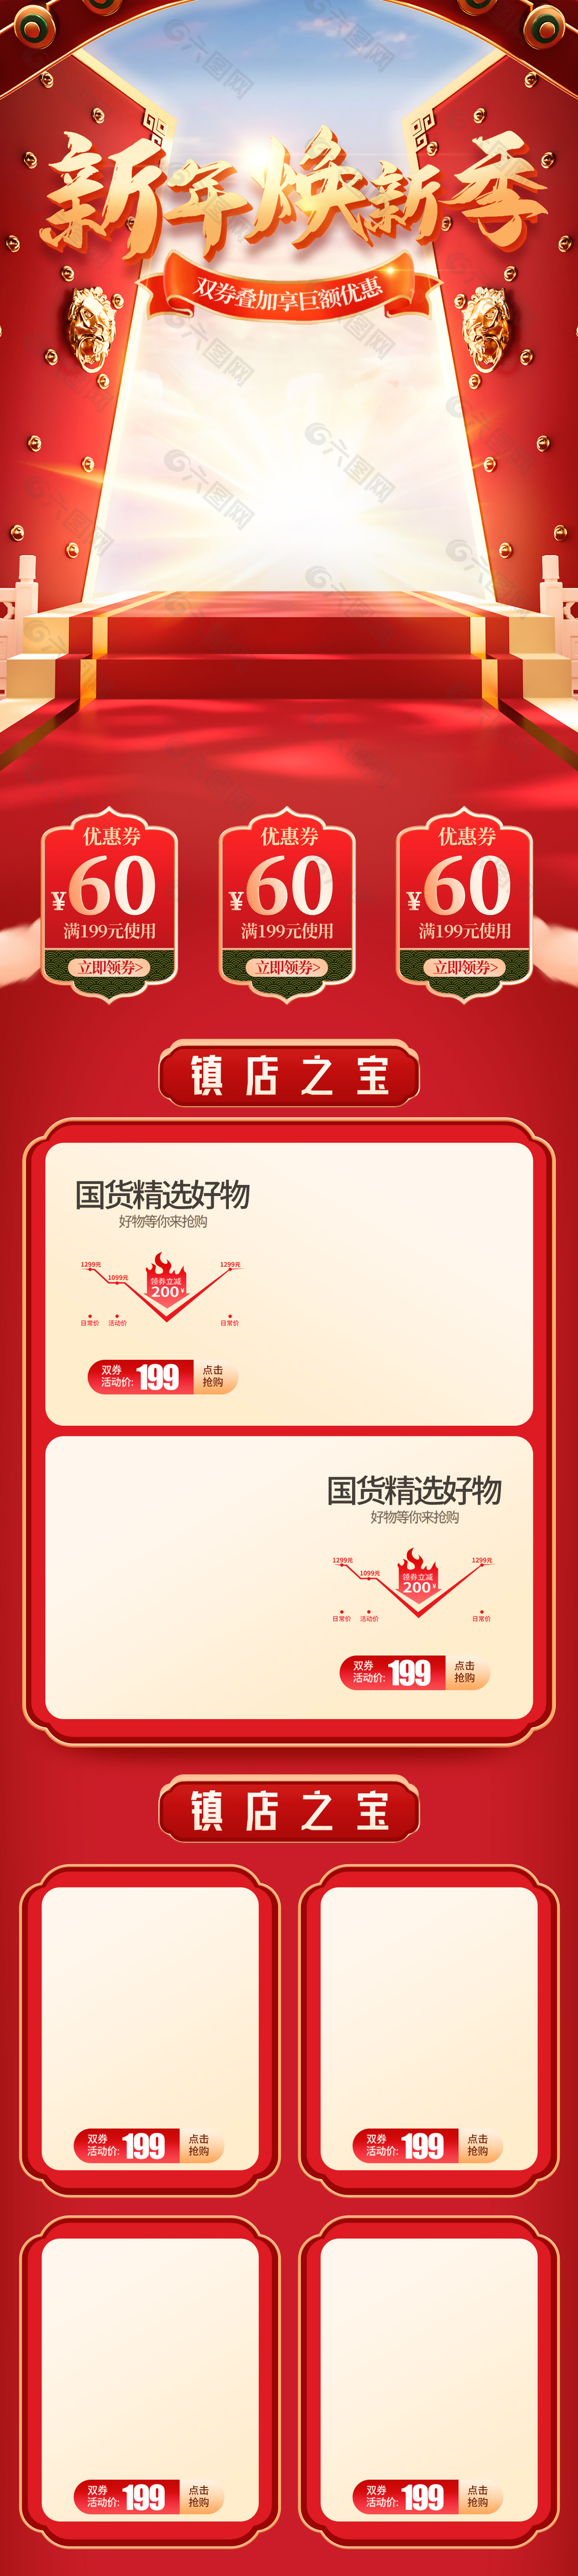 新年焕新季活动中国风电商首页界面设计